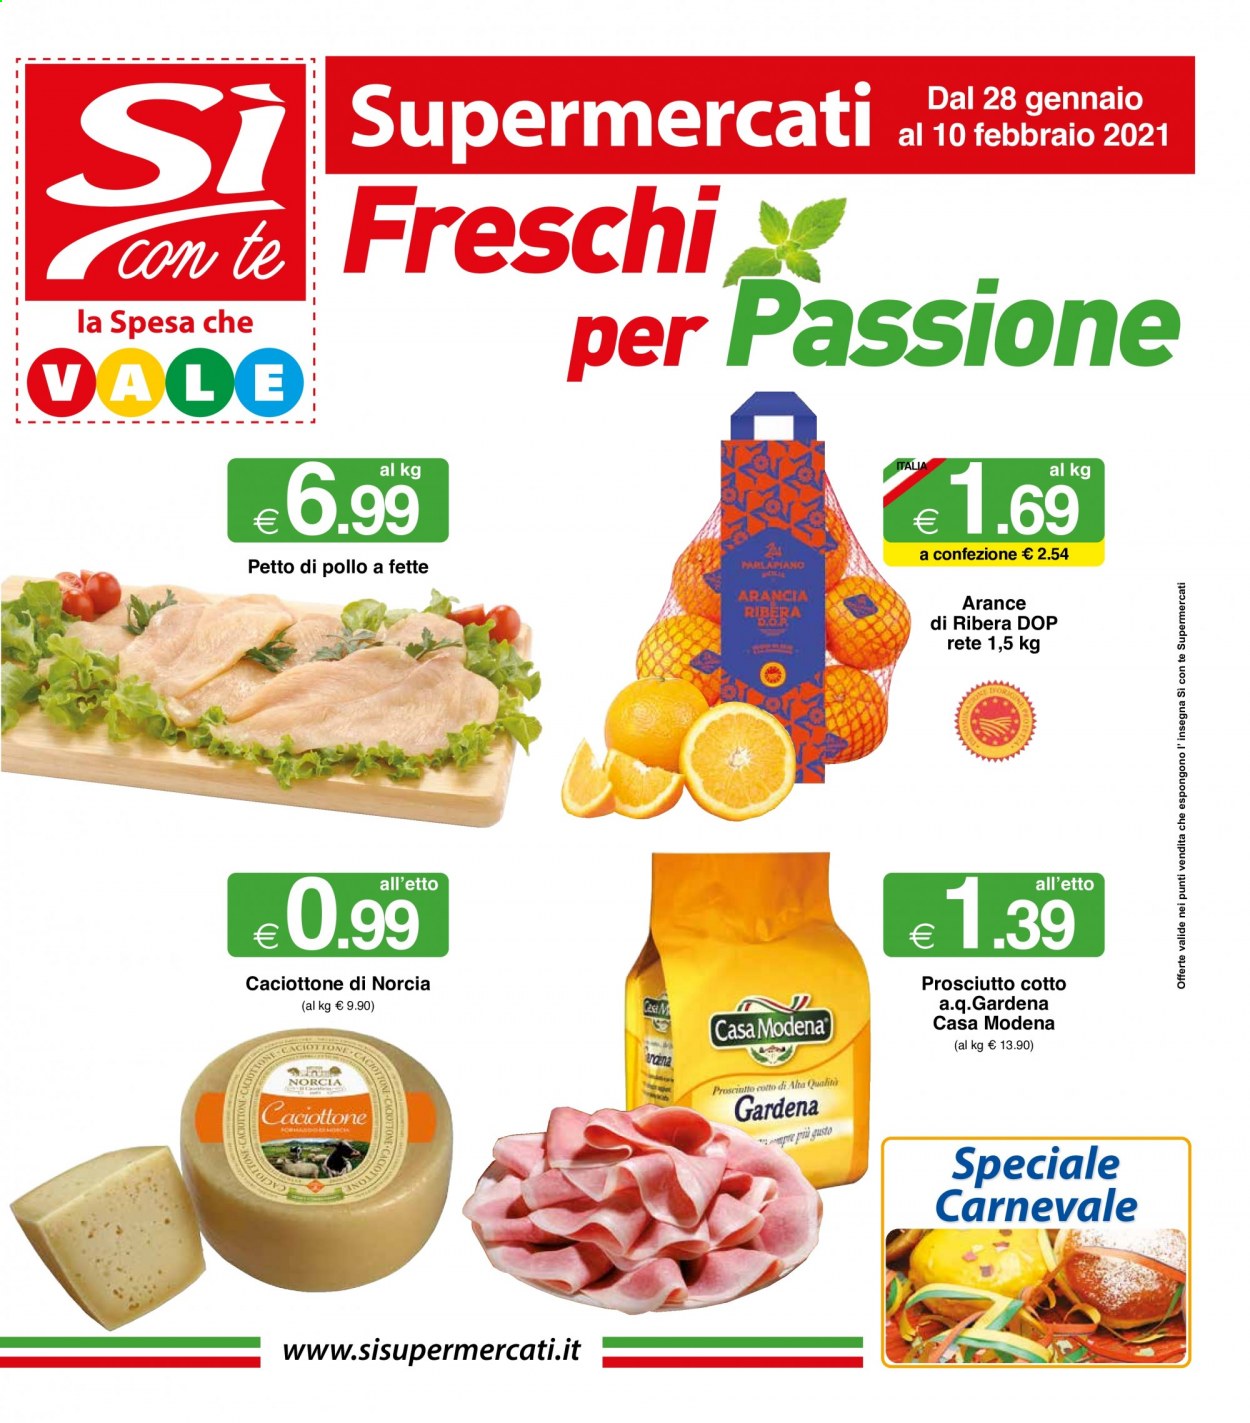 thumbnail - Volantino Si con te - 28/1/2021 - 10/2/2021 - Prodotti in offerta - arance, petto di pollo, prosciutto, prosciutto cotto. Pagina 1.